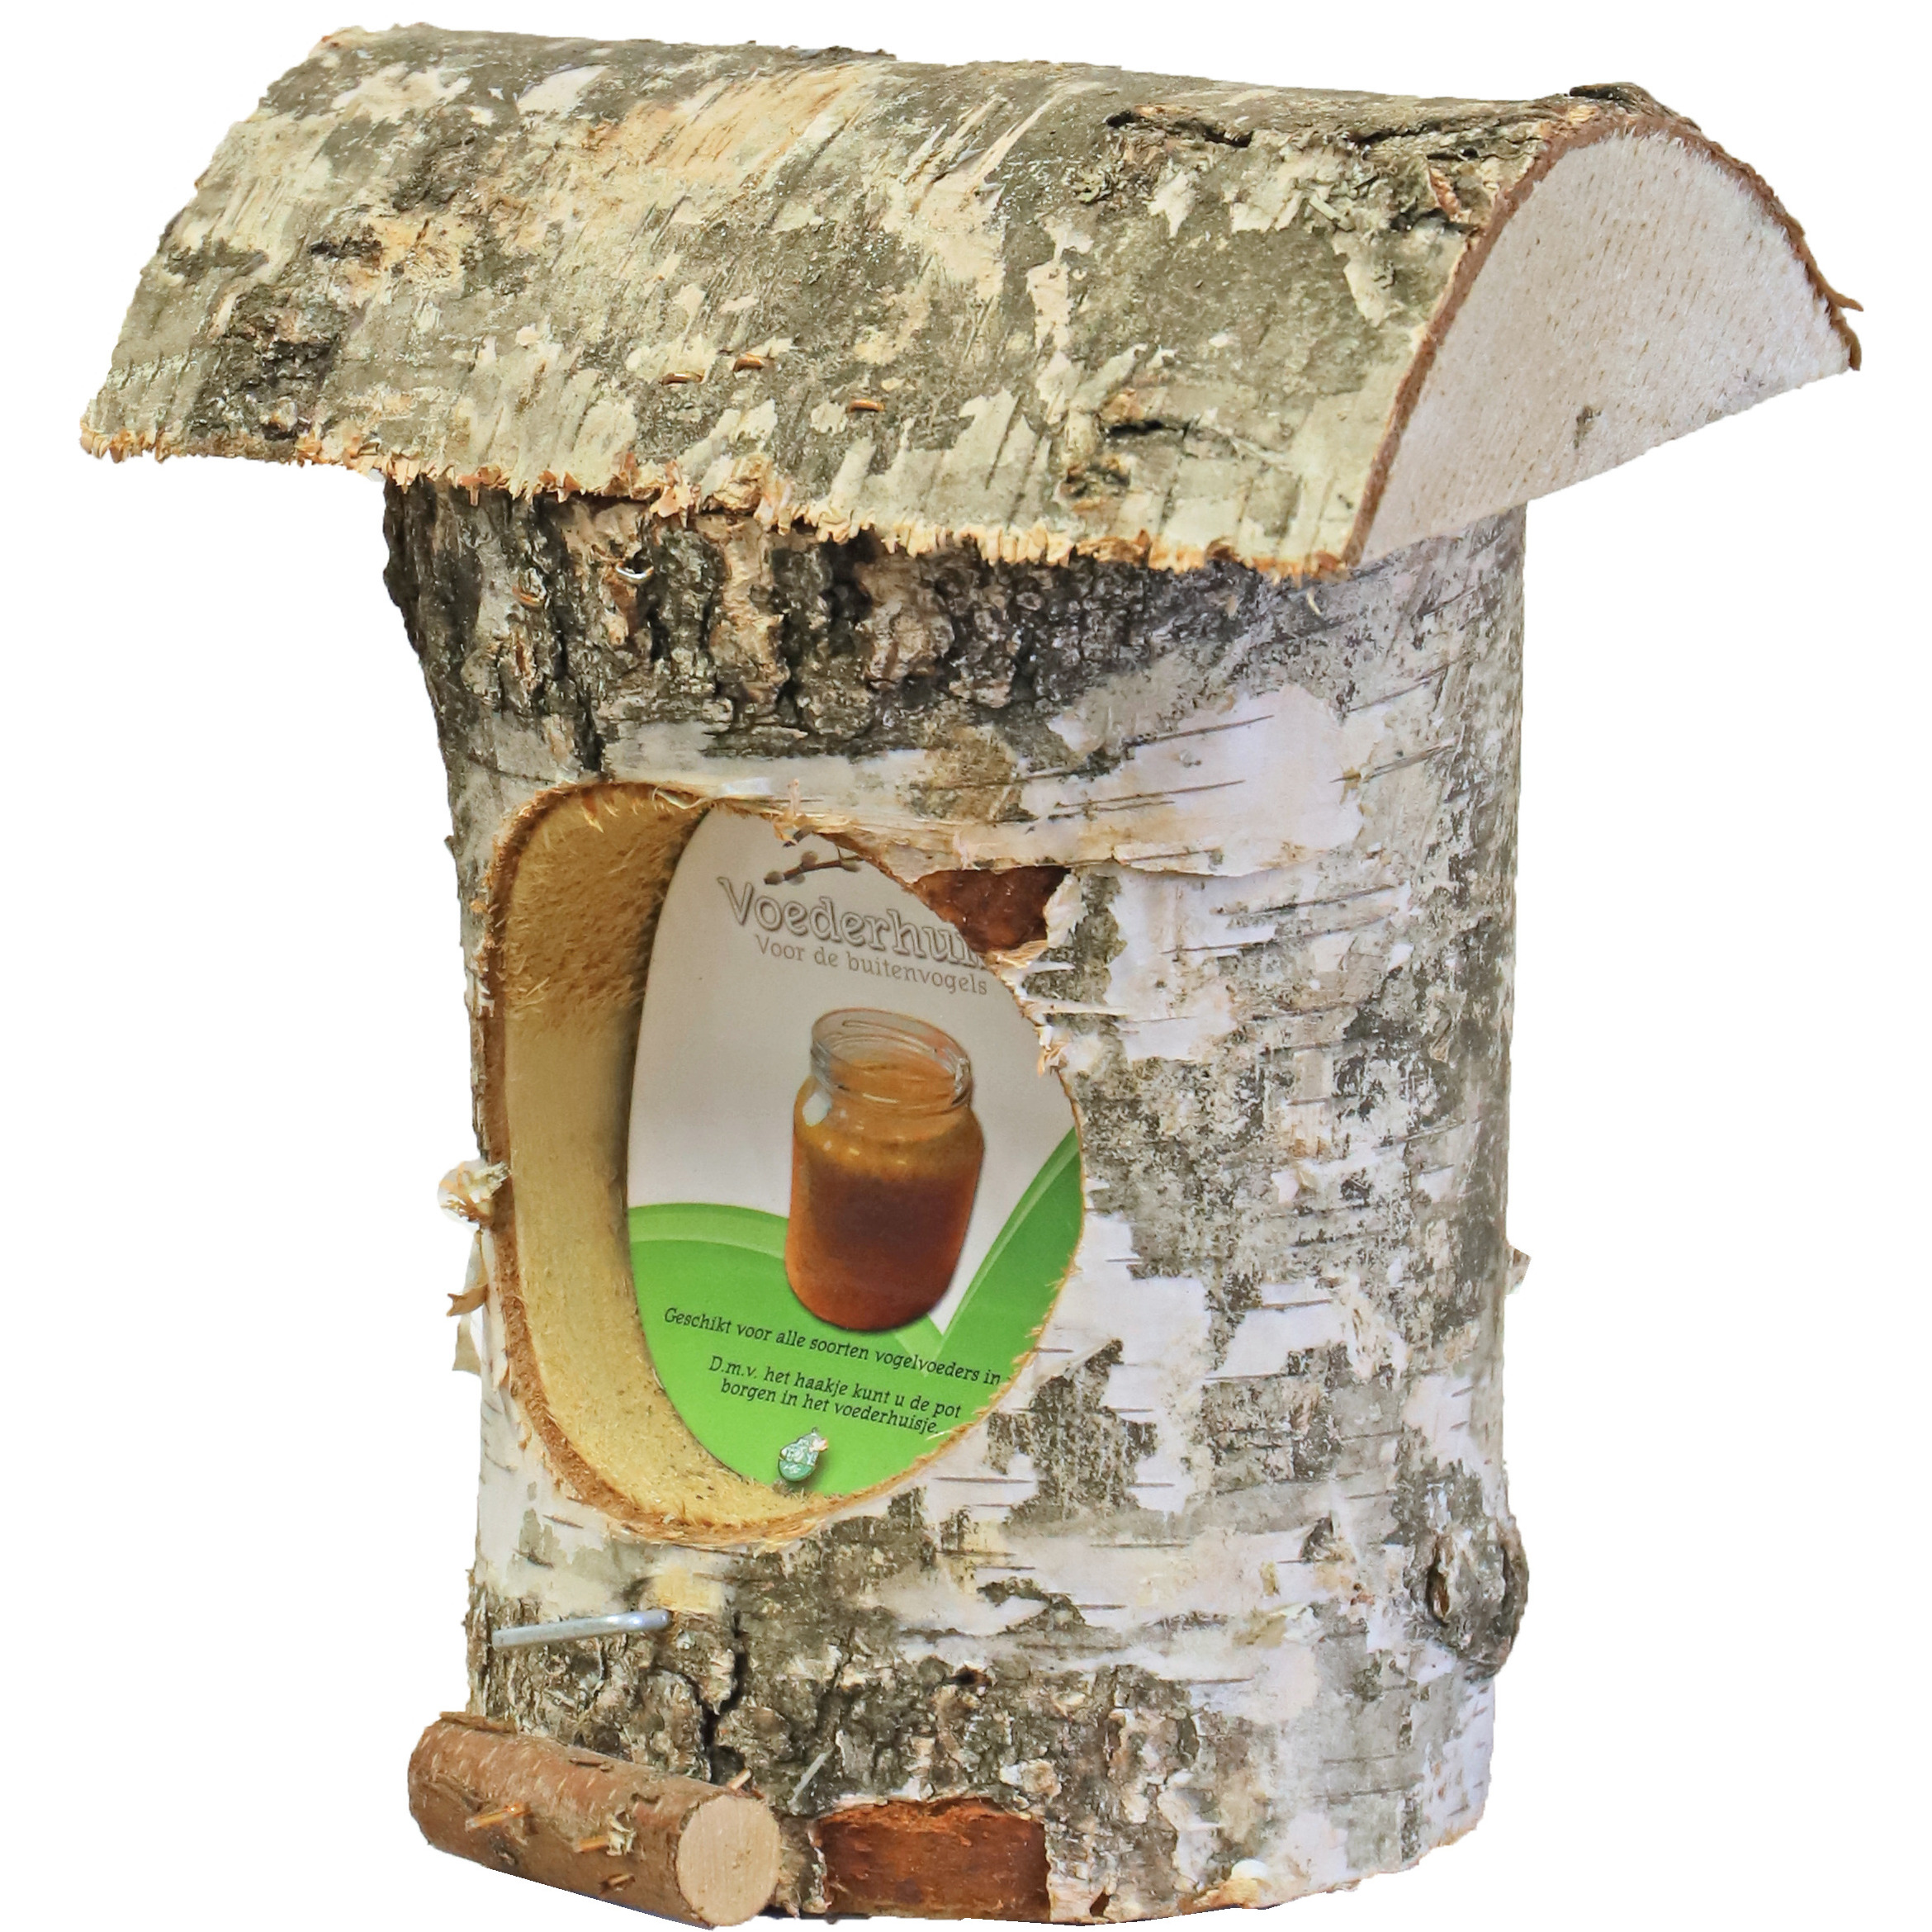 Boon Vogelhuisje-voederhuisje berkenhout met schors 27 cm